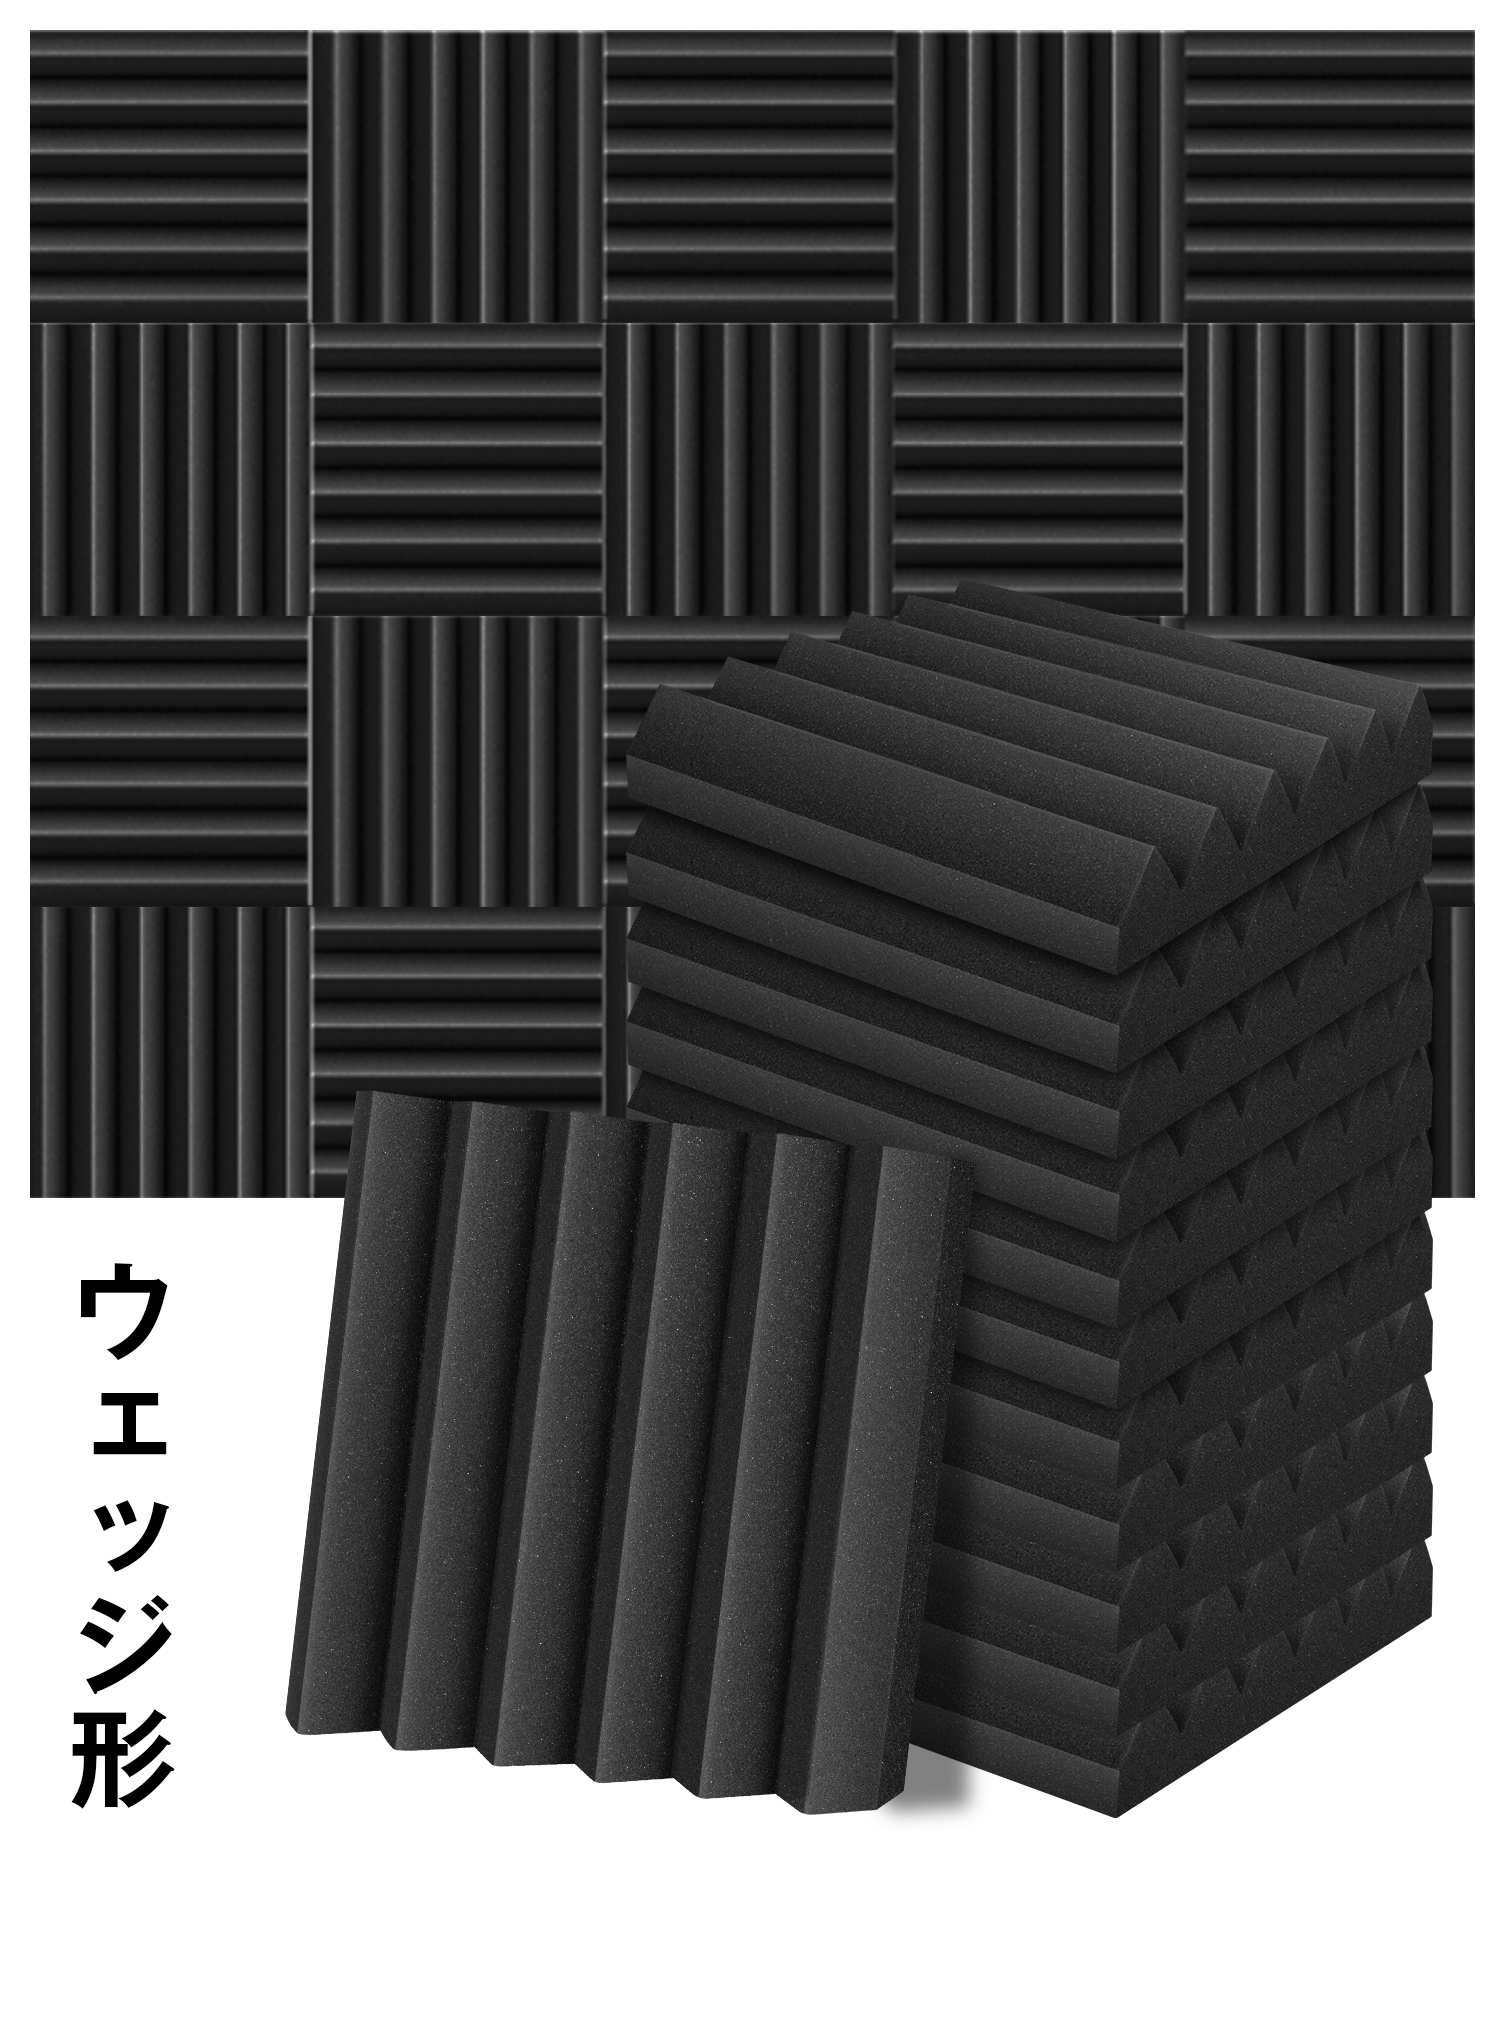 吸音材 30*30*5cm 極厚 密度25kg/m^3 ウレタンフォーム 吸音対策 室内装飾 楽器 消音 騒音 防音 YOPIN 吸音パネル  両面テープ付き